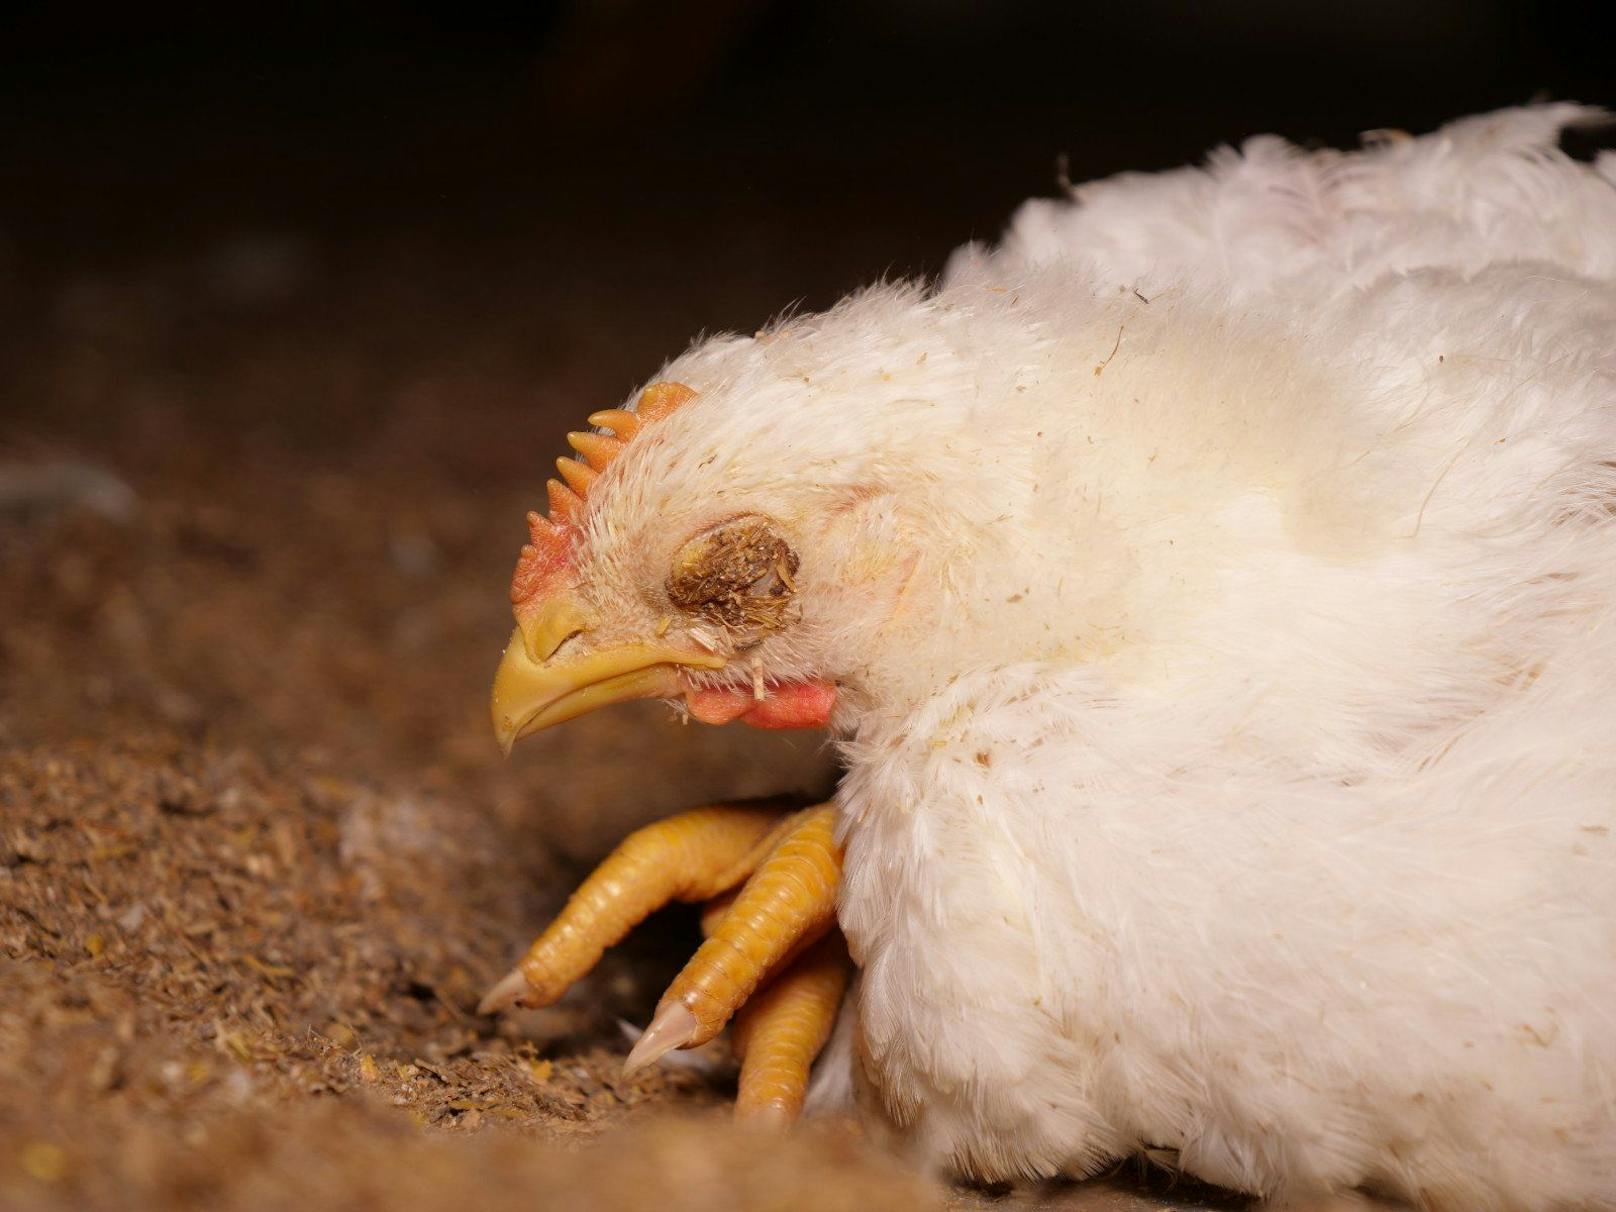 Das einzelne Tier ist in der Branche nichts wert. Schlachtreife Hühner werden genauso wie Kücken brutal erschlagen oder mit Genickbruch getötet. 